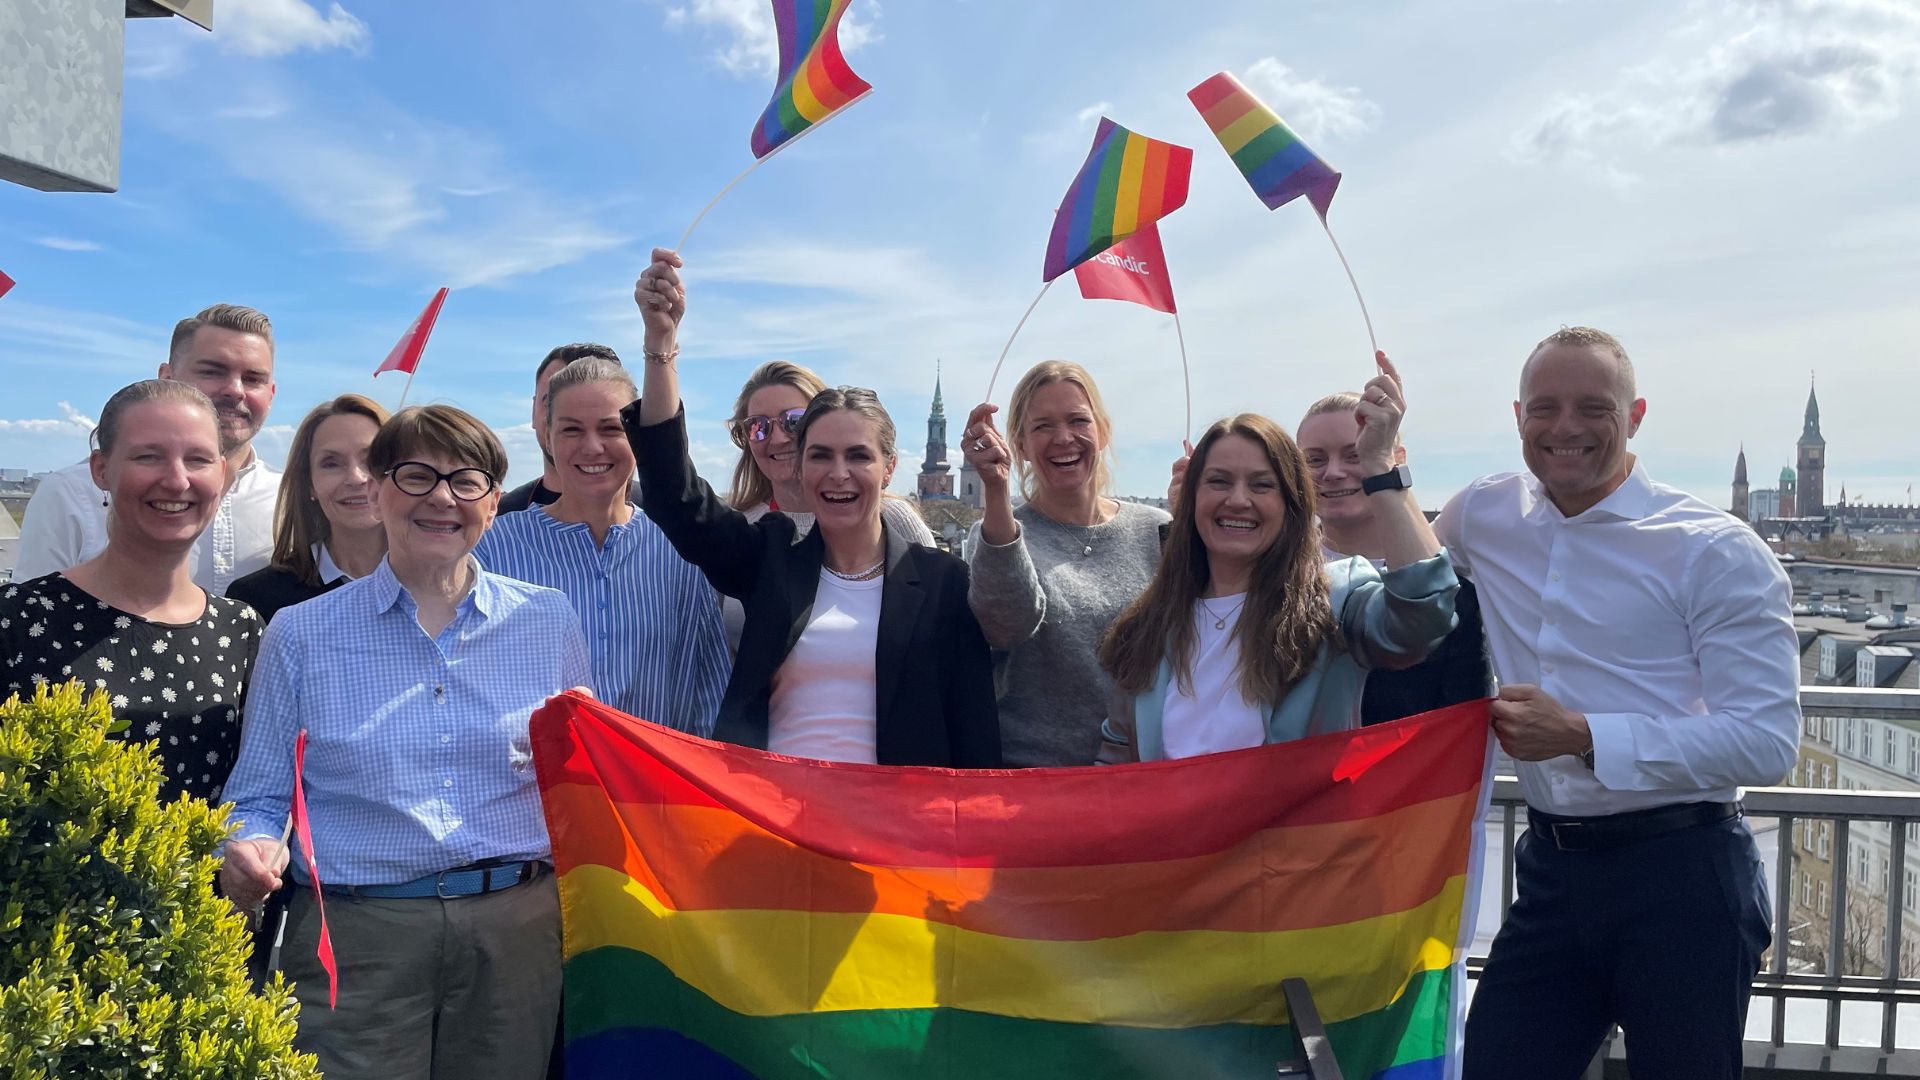 Scandic har netop indgået partnerskab med Copenhagen Pride. Partnerskabet skal bl.a. skabe dialog og intern læring og kommer i forlængelse af Scandics mangeårige fokus på at skabe en inkluderende arbejdsplads og kultur